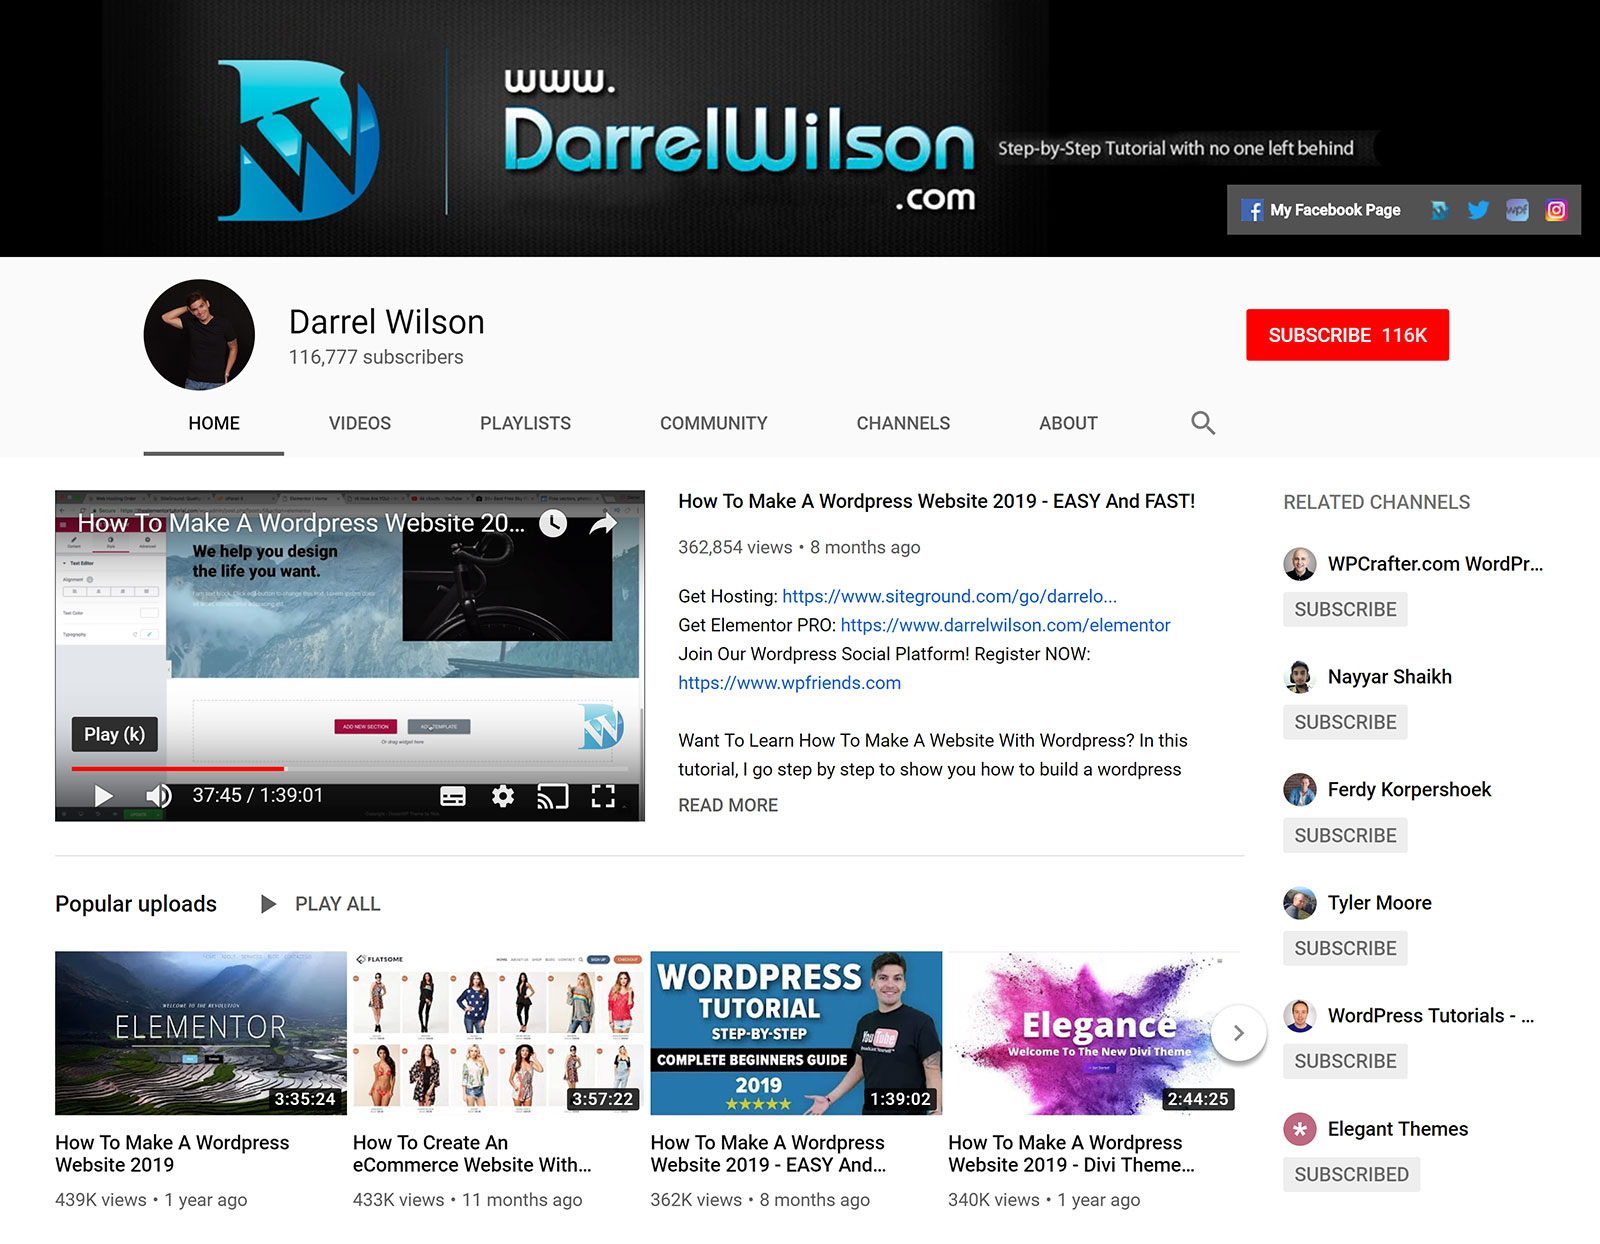 Darrel Wilson - YouTube Channel